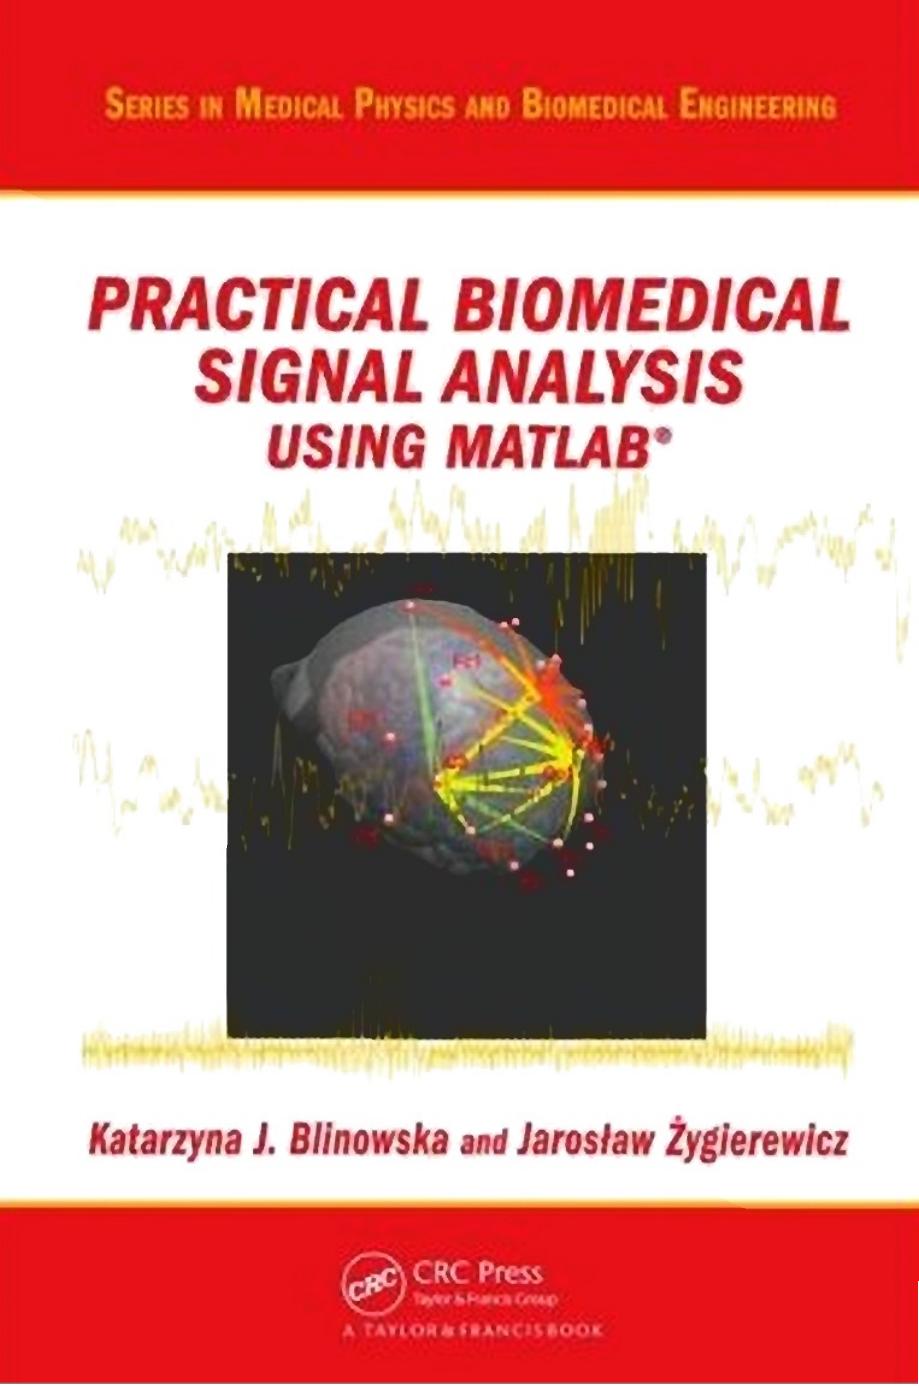 Practical Biomedical Signal Analysis Using MATLAB